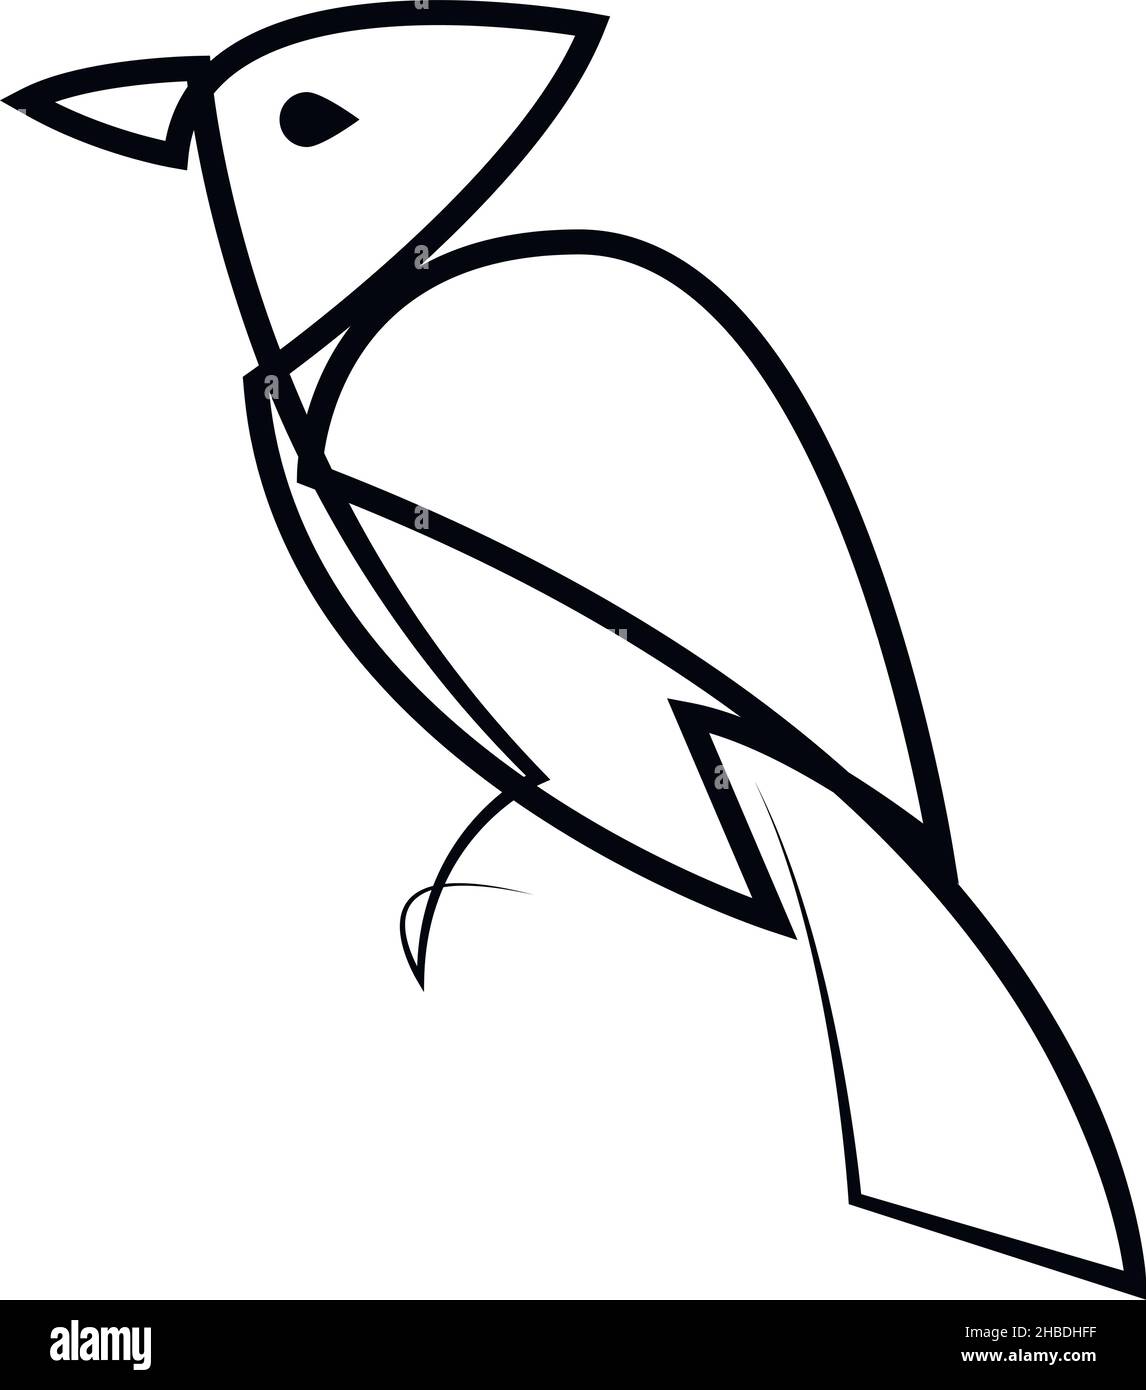 Maschio rosso cardinale settentrionale. Una linea continua disegnando uccello rosso con crested. Schizzo vettoriale lineare di uccello disegnato a mano isolato. Capodanno, Natale, vincere Illustrazione Vettoriale